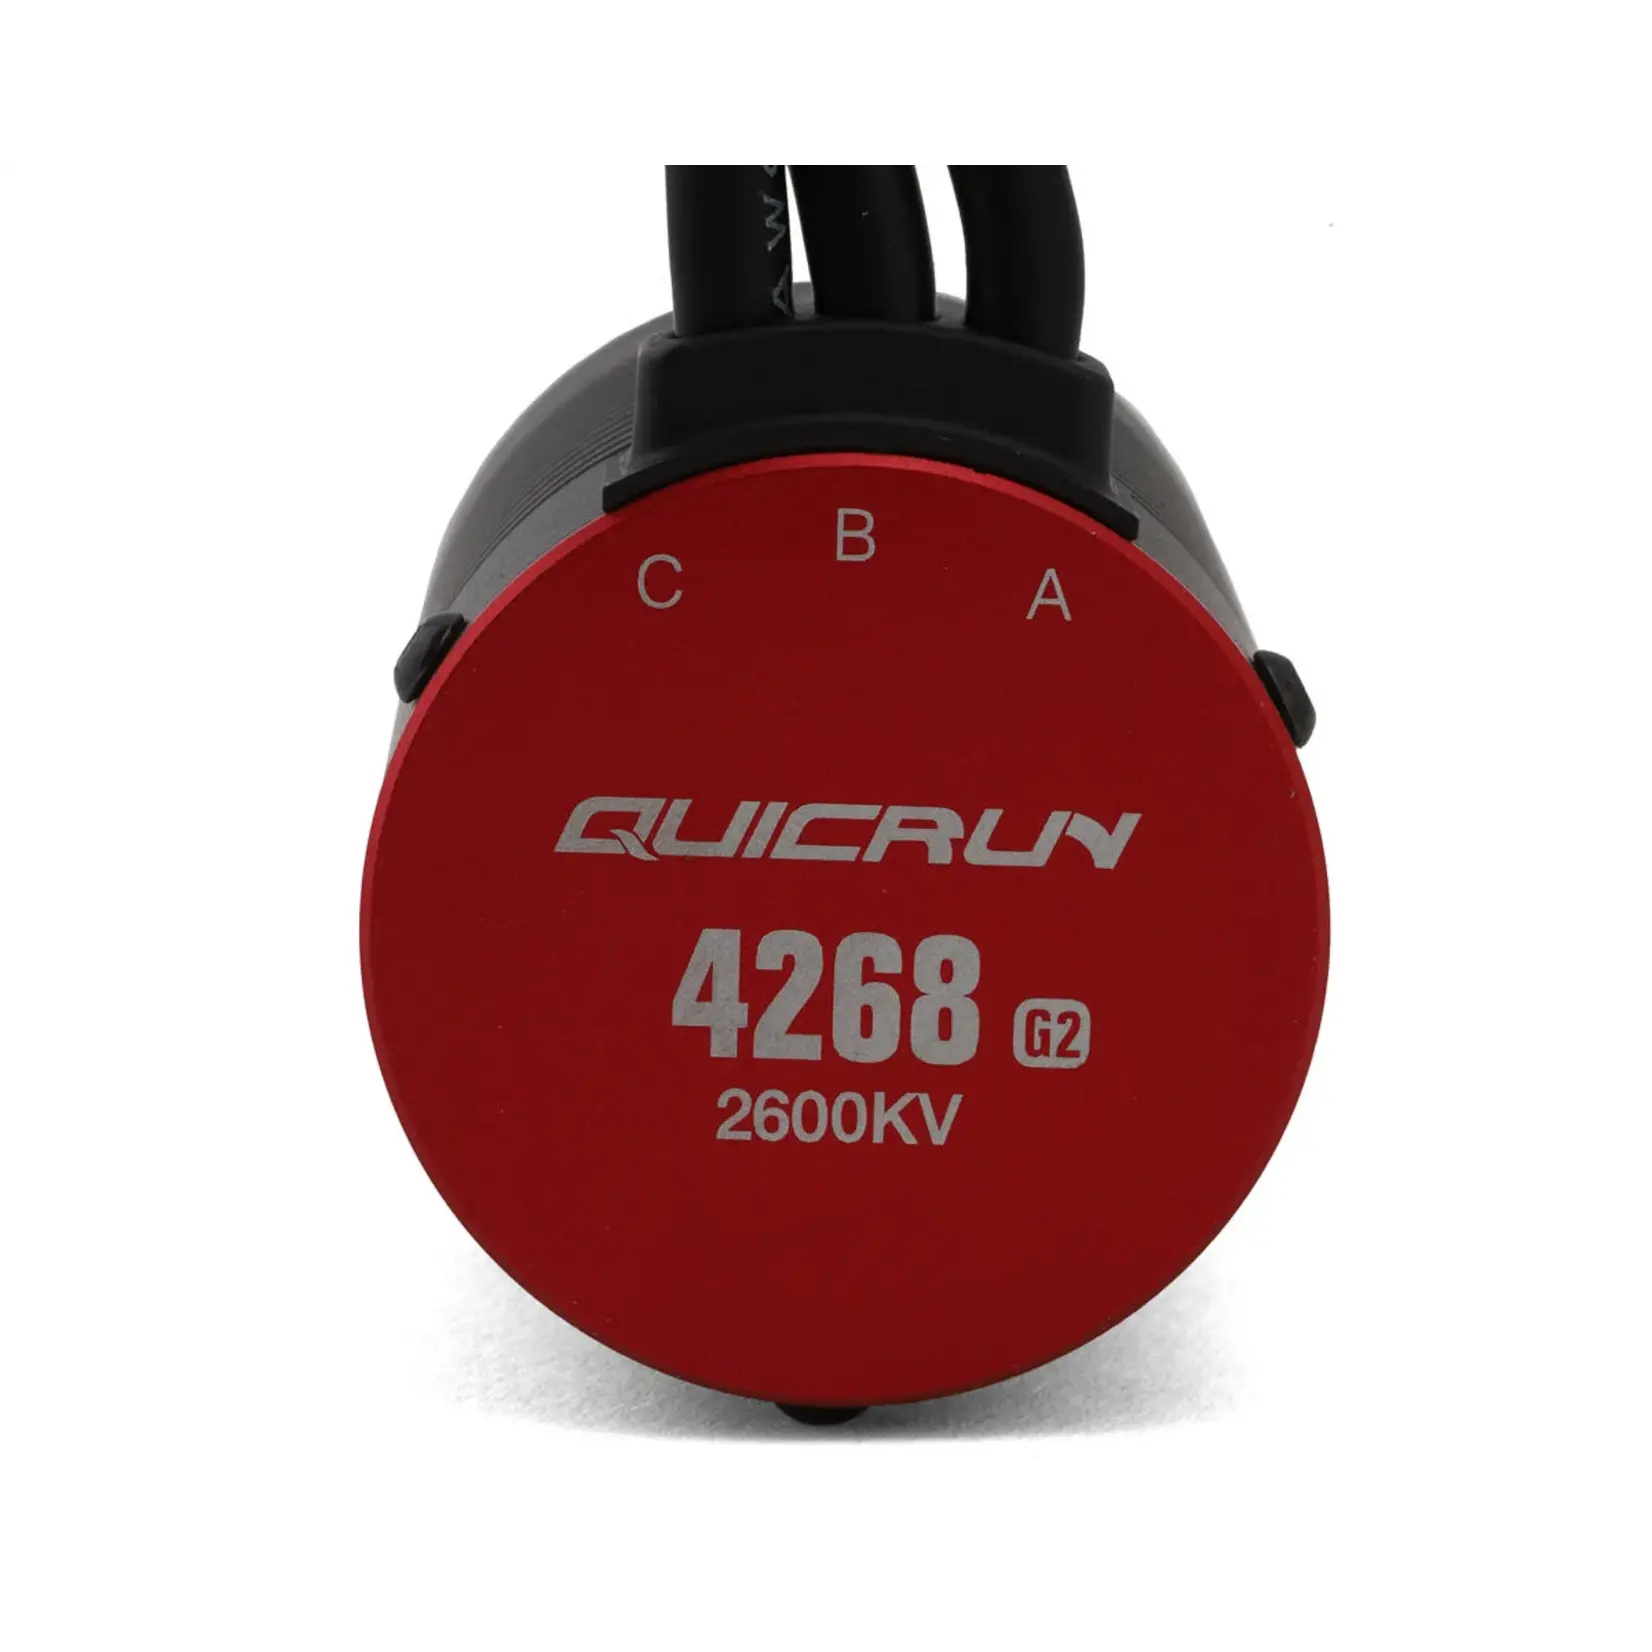 Hobbywing Hobbywing QuicRun 8BL150 G2 Sensorless Brushless ESC/4268SL Motor Combo (2600kV) #38030400